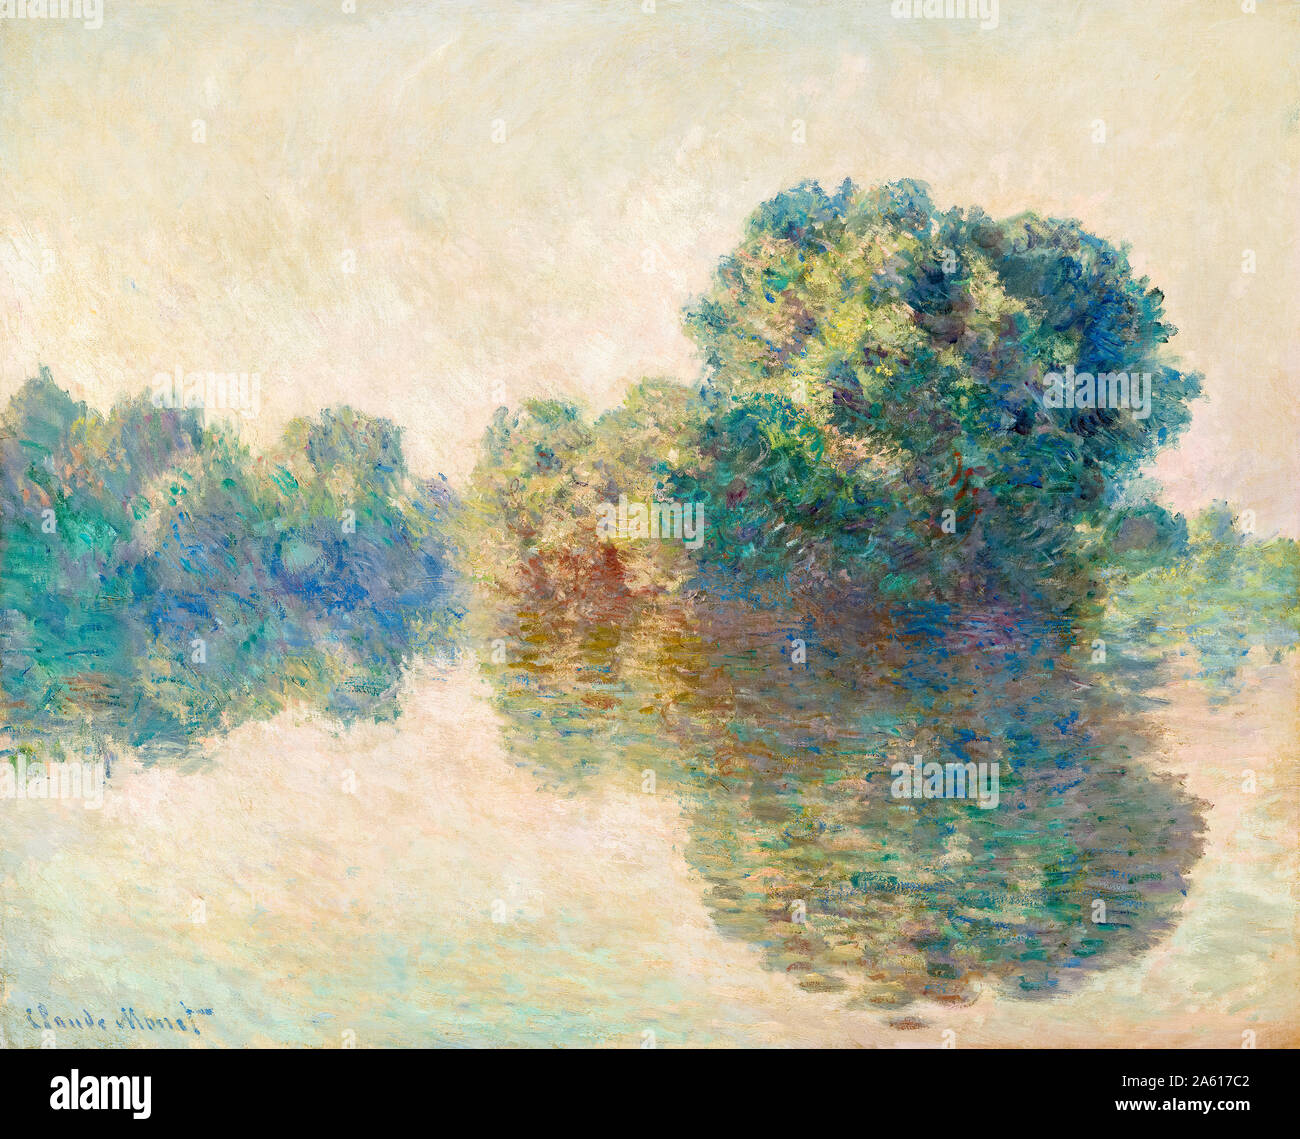 La peinture de paysage, Claude Monet, la Seine à Giverny, 1897 Banque D'Images